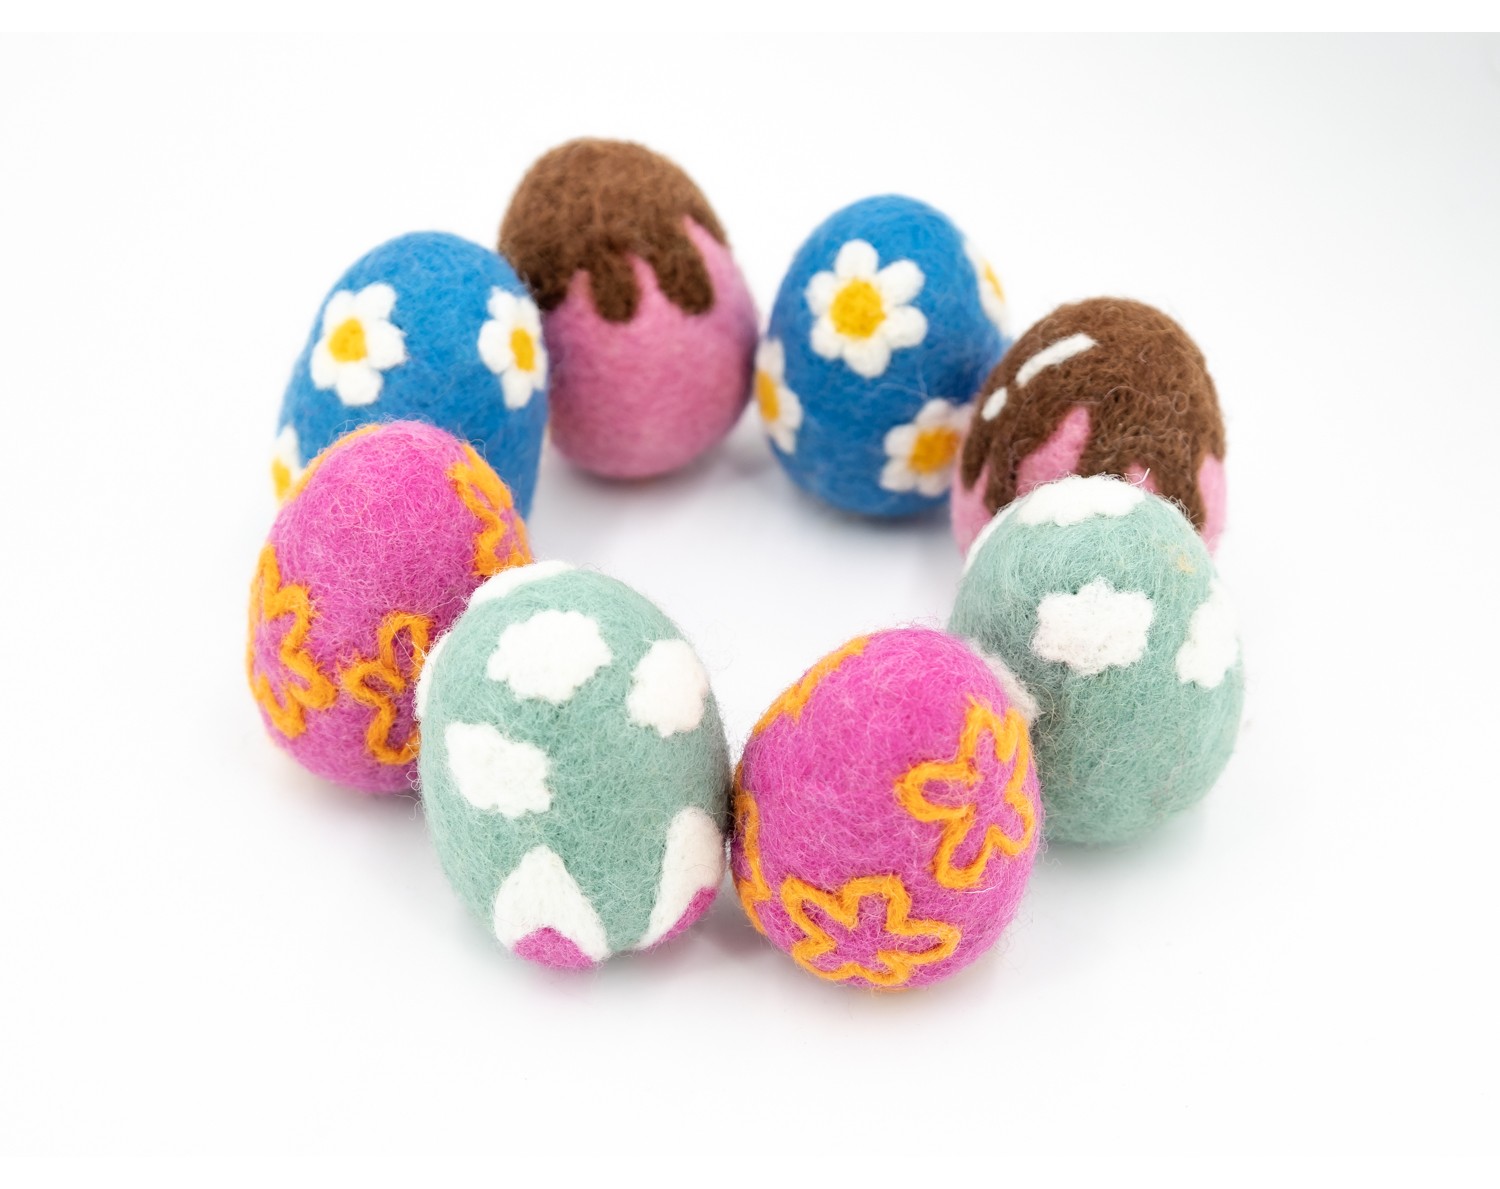 Handmade Wool Felt Easter Eggs in Bulk